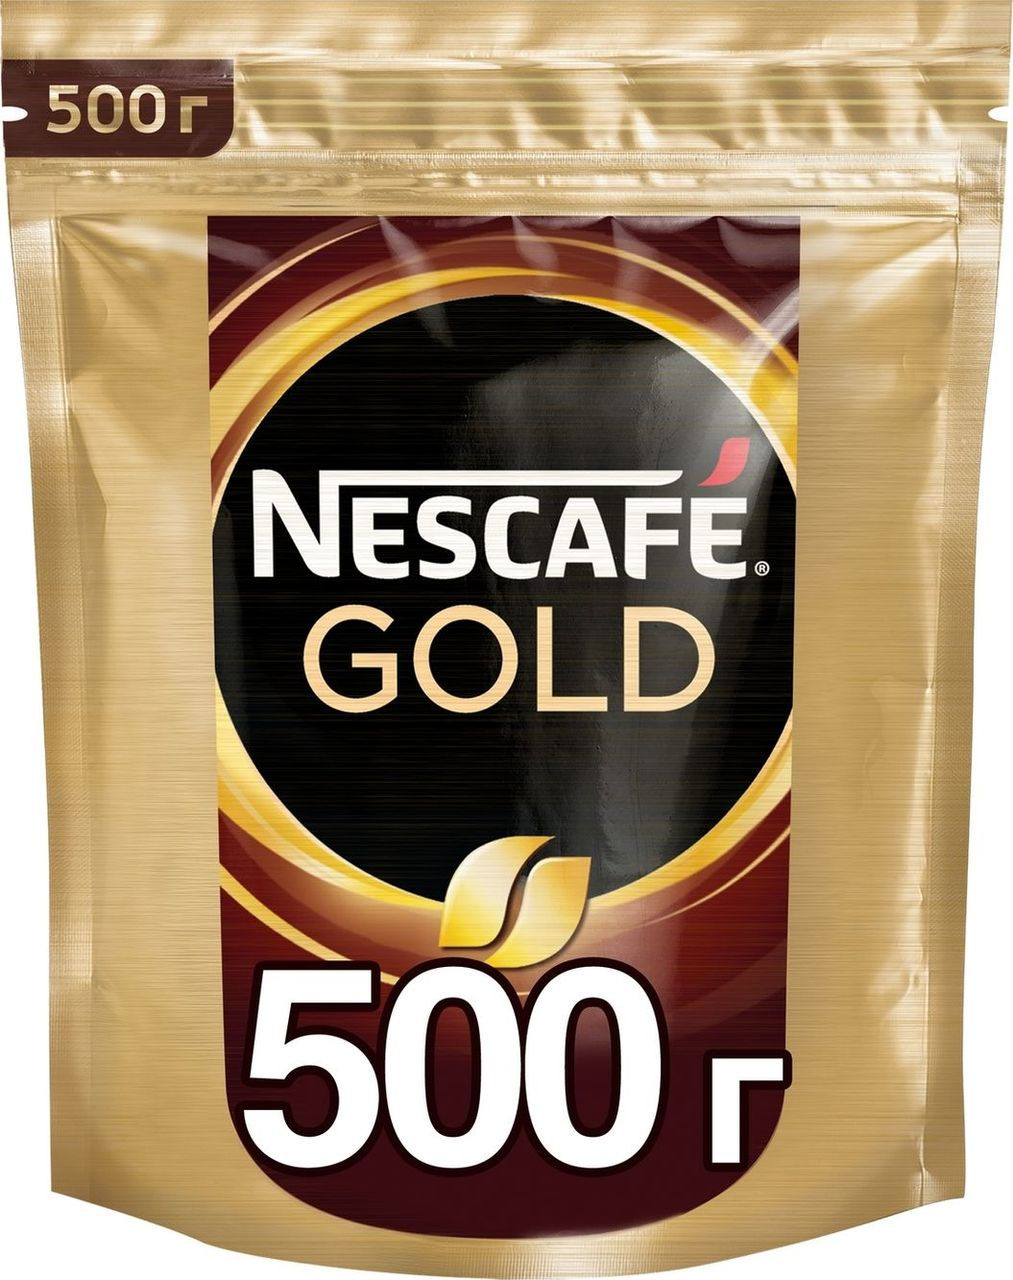 Nescafe gold пакет. Кофе Нескафе Голд 500. Кофе Нескафе Голд 500г м/у. Нескафе Голд в мягкой упаковке 500 грамм. Кофе Nescafe Gold пакет 500 гр.